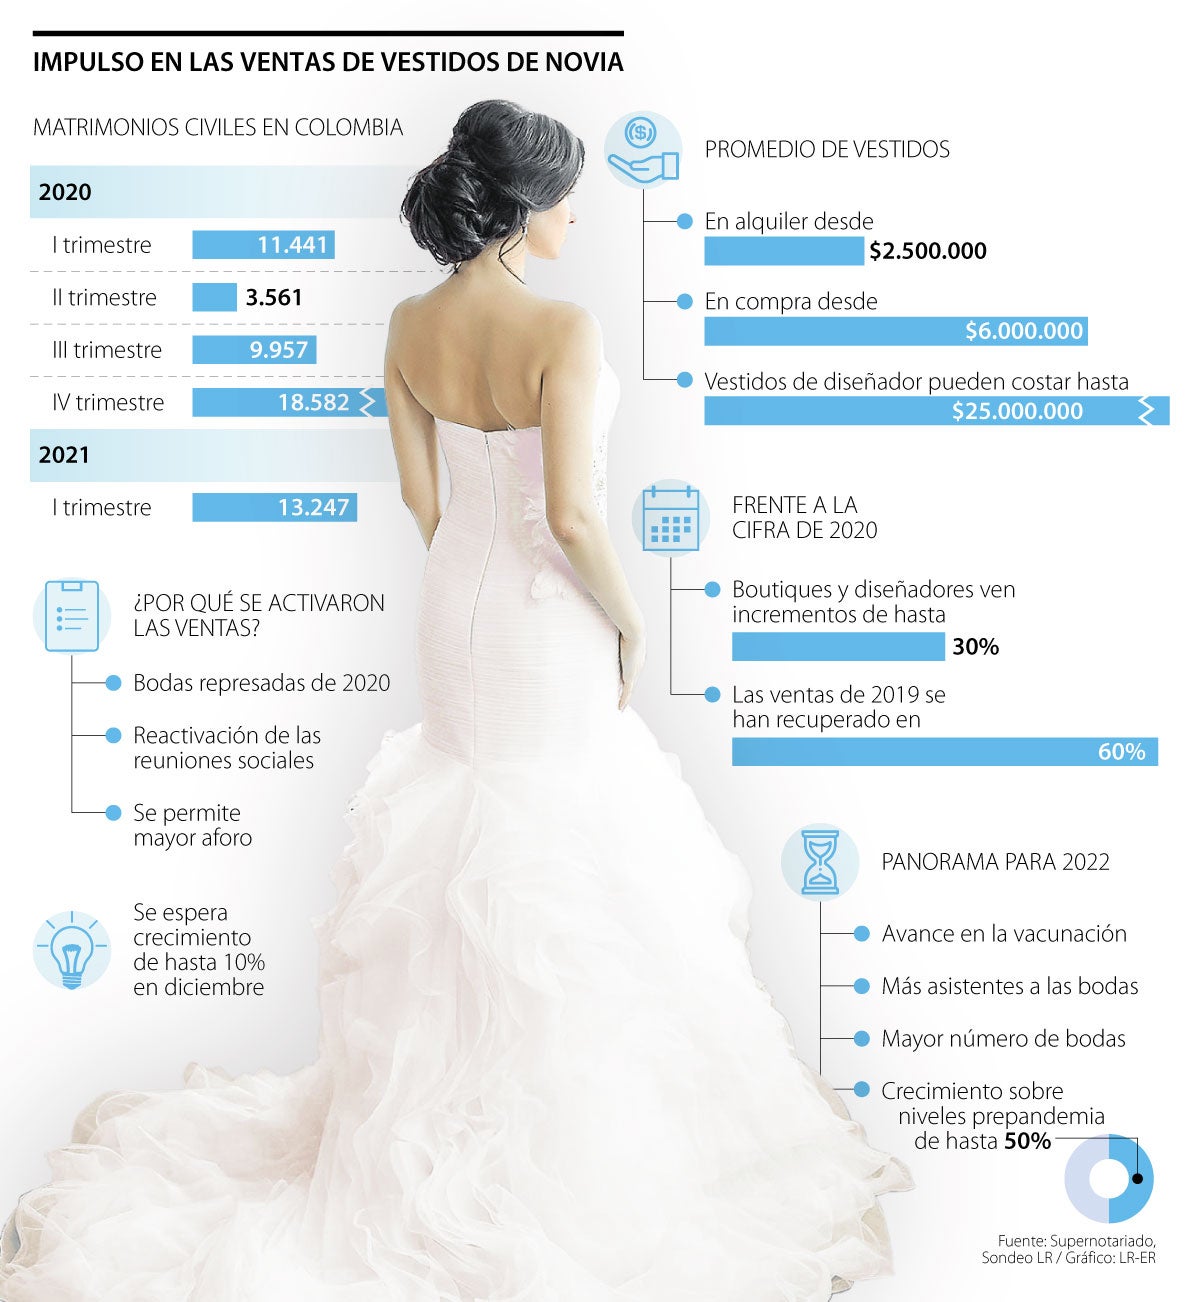 La reactivación de los matrimonios impulsó la venta de vestidos de novia  más de 60%